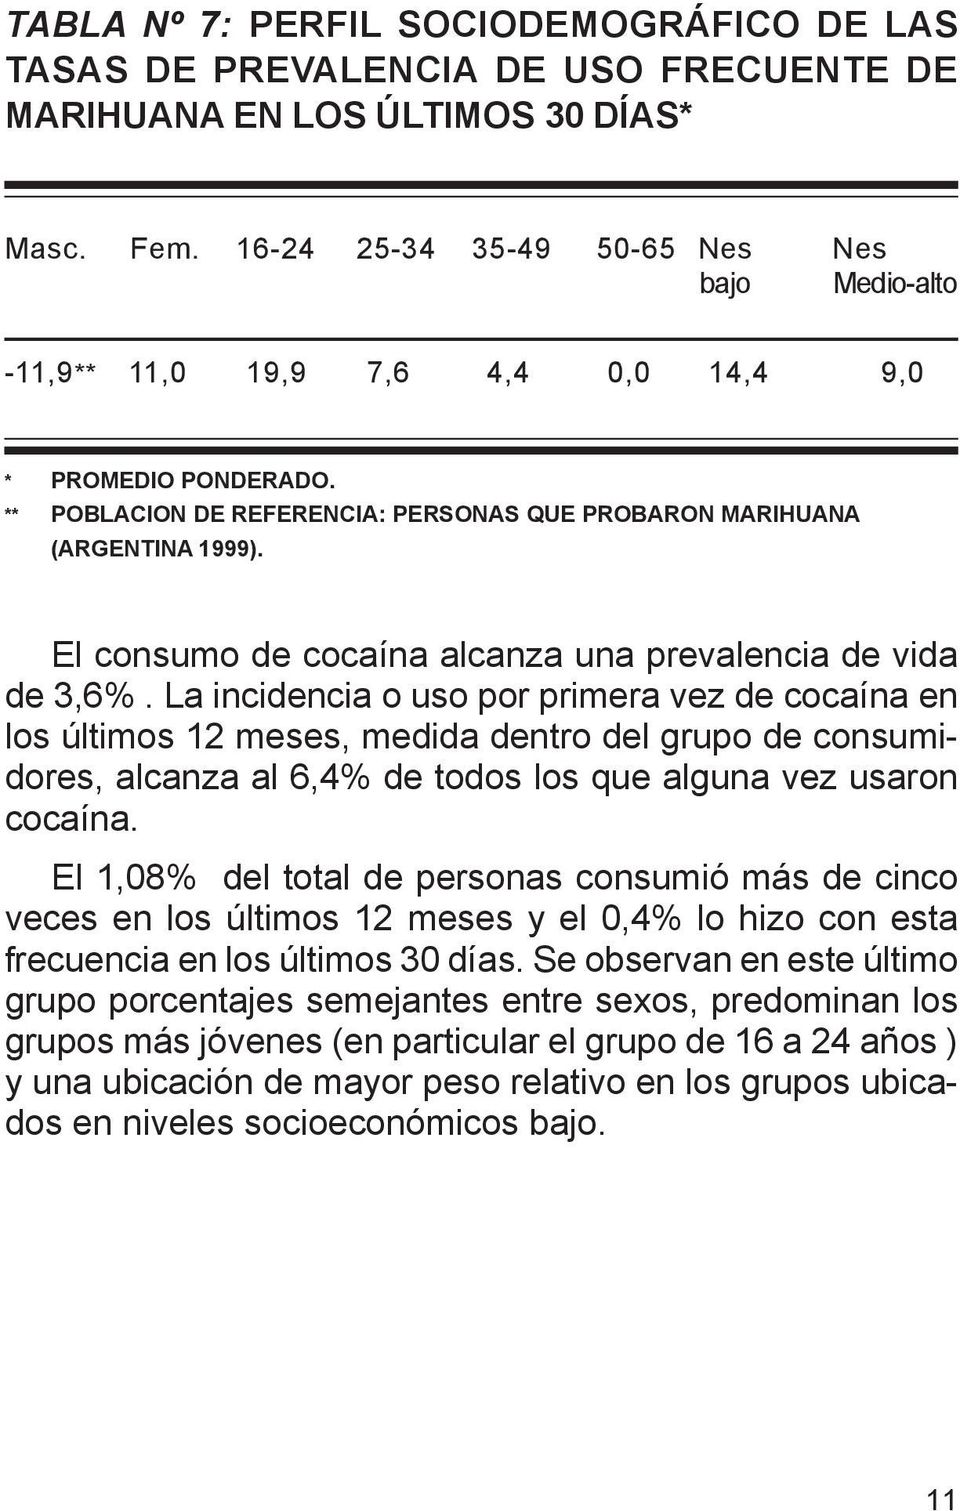 El consumo de cocaína alcanza una prevalencia de vida de 3,6%.